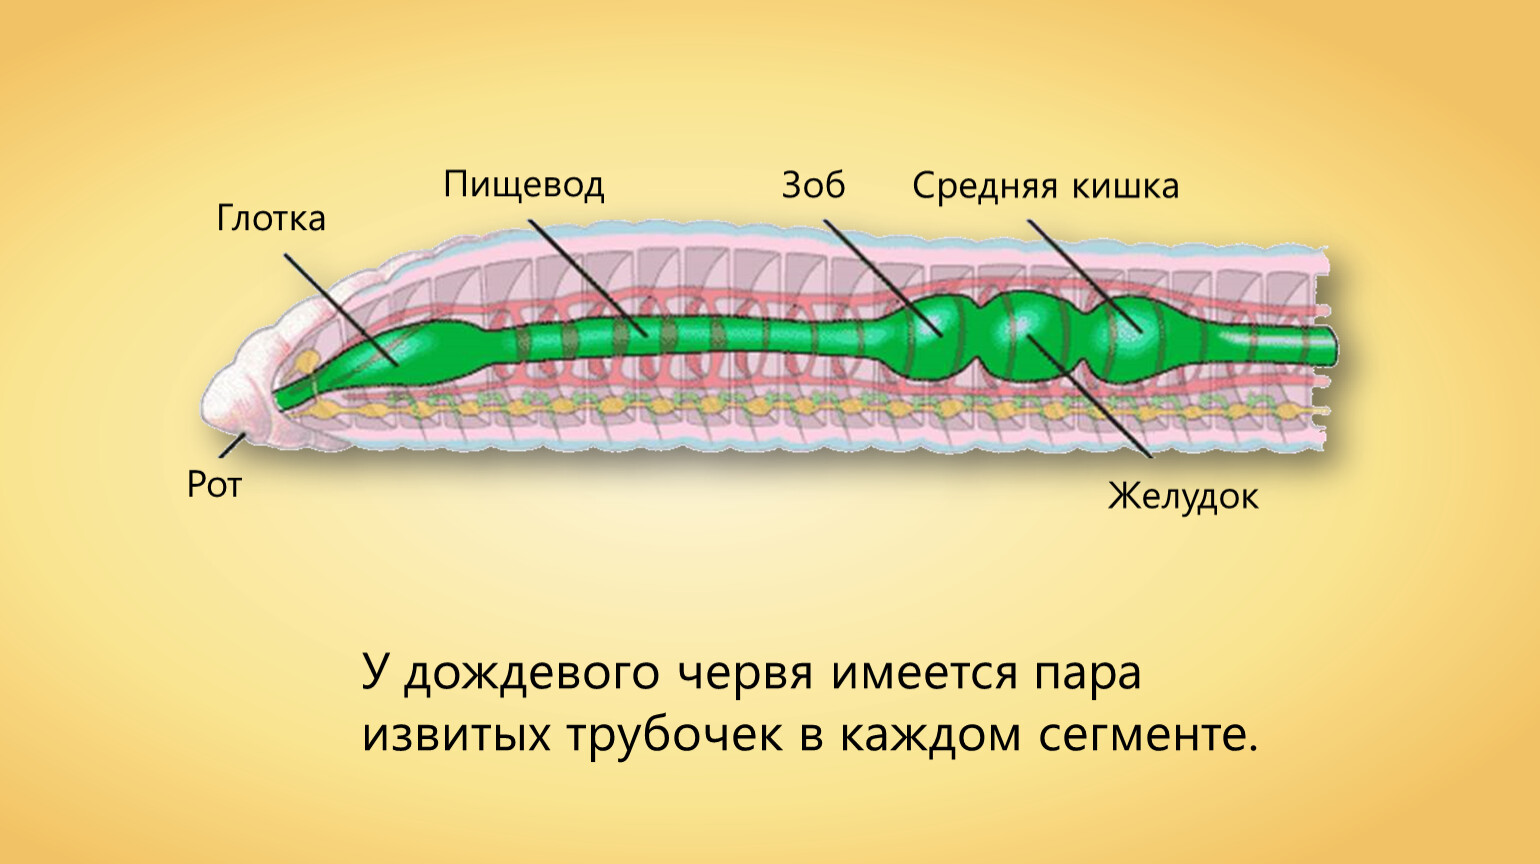 Крокодил спинной мозг дождевой червь. Отделы пищеварительной системы дождевого червя. Органы пищеварительной системы дождевого червя. Пищеварительная система червяка дождевого. Пищеварительная и выделительная система дождевого червя.